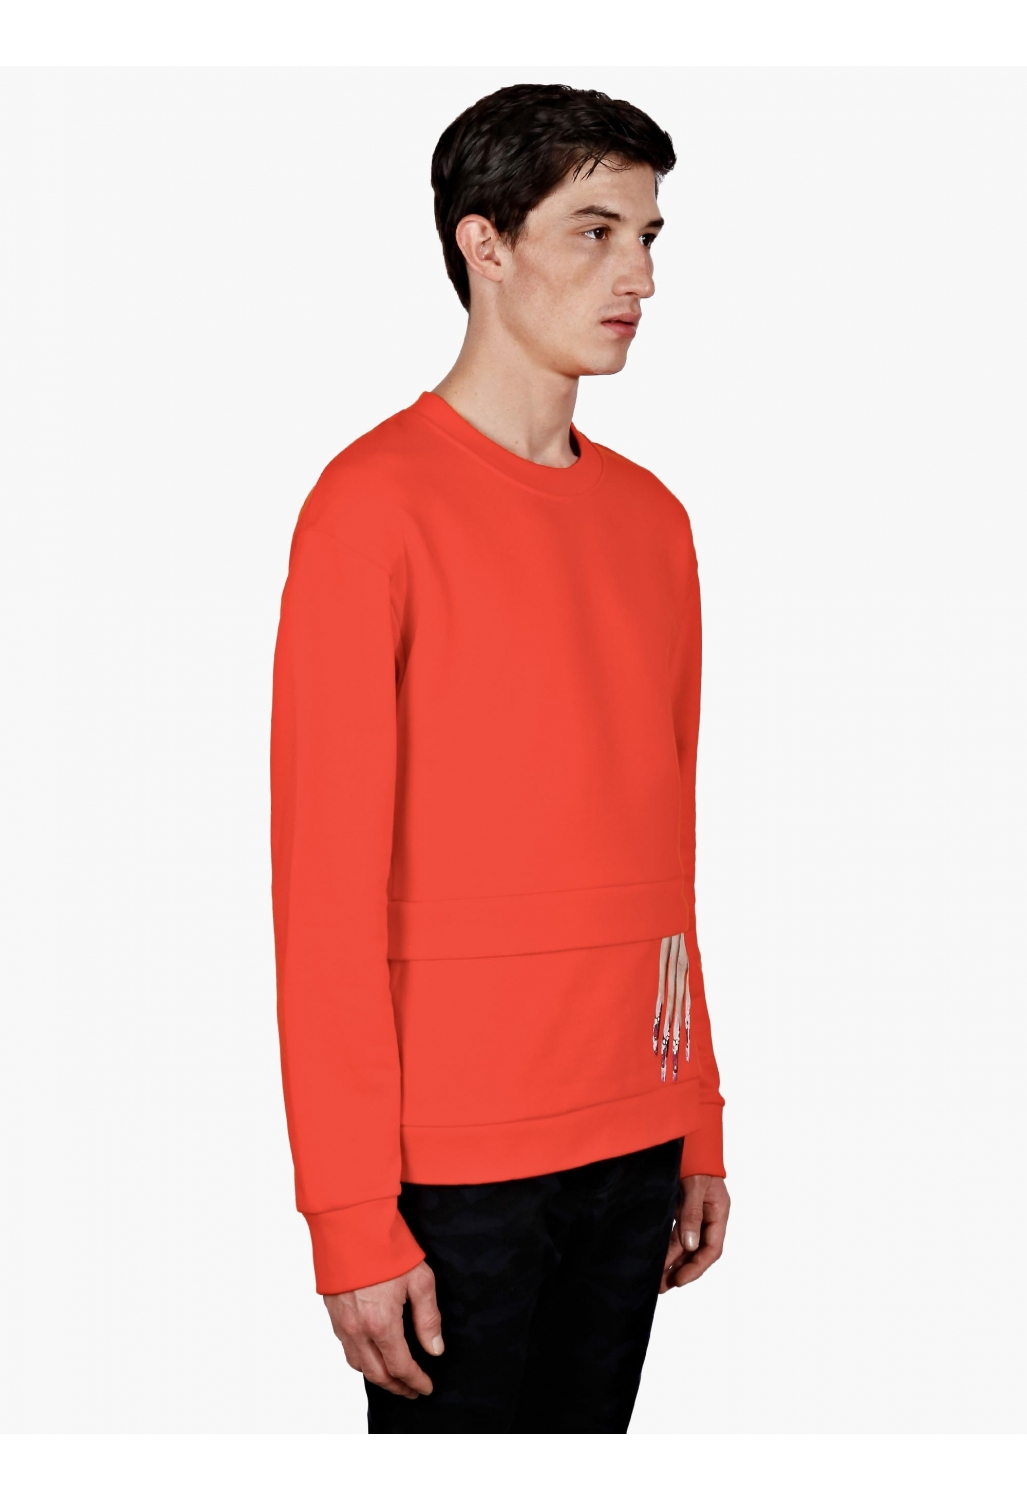 Raf simons / Sterling Ruby Men'S Orange Hand Print Sweatshirt in Red ...